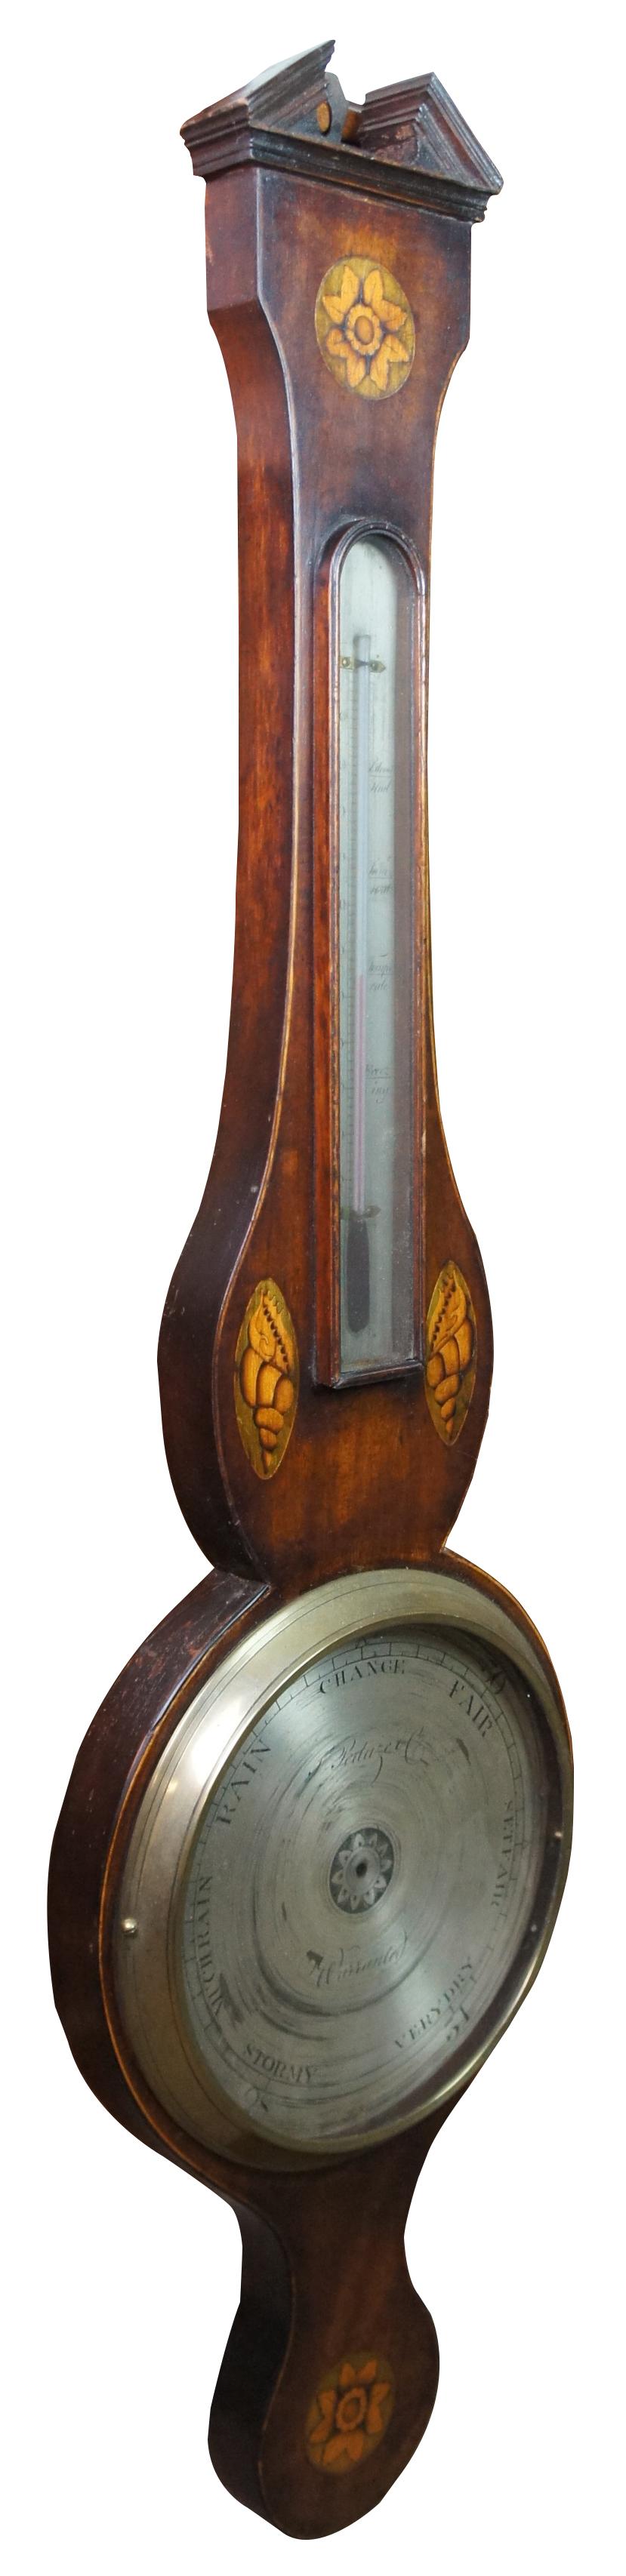 Antikes englisches Barometer aus Obstholz von George III. in Form eines Banjos mit offenem Giebel und eingelegtem Muschel- und Blumenmotiv aus Satinholz. Hergestellt von F. Peduze Co. CIRCA - 1820er Jahre. Maße: 38